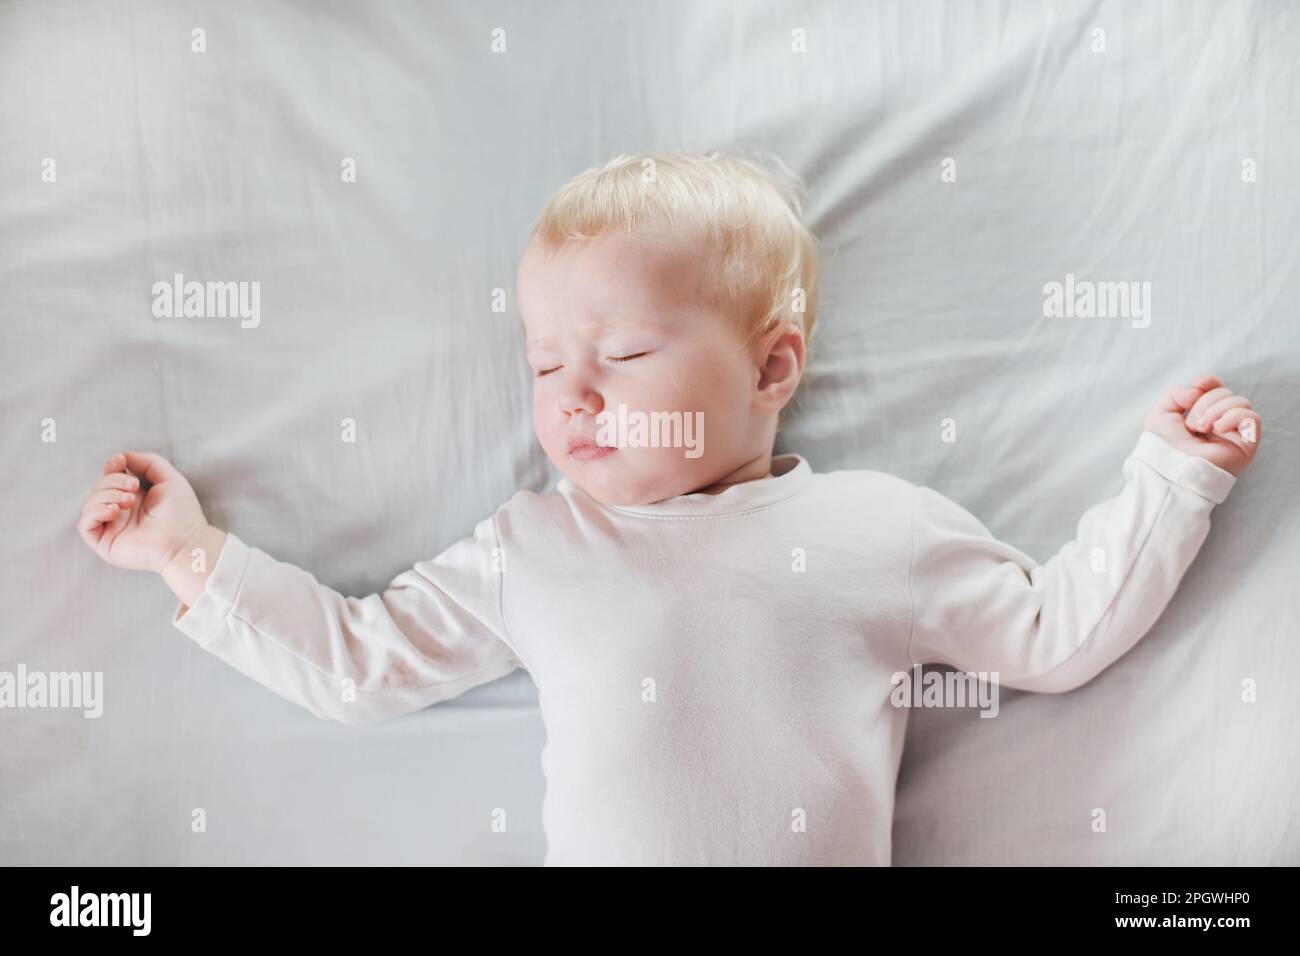 Süßes kleines Mädchen schläft auf weißer Bettwäsche im Bett. Kind 1 Jahre, das die Hände hebt. Glückliche Kindheit und Schlafprobleme bei Kindern Konzept Stockfoto